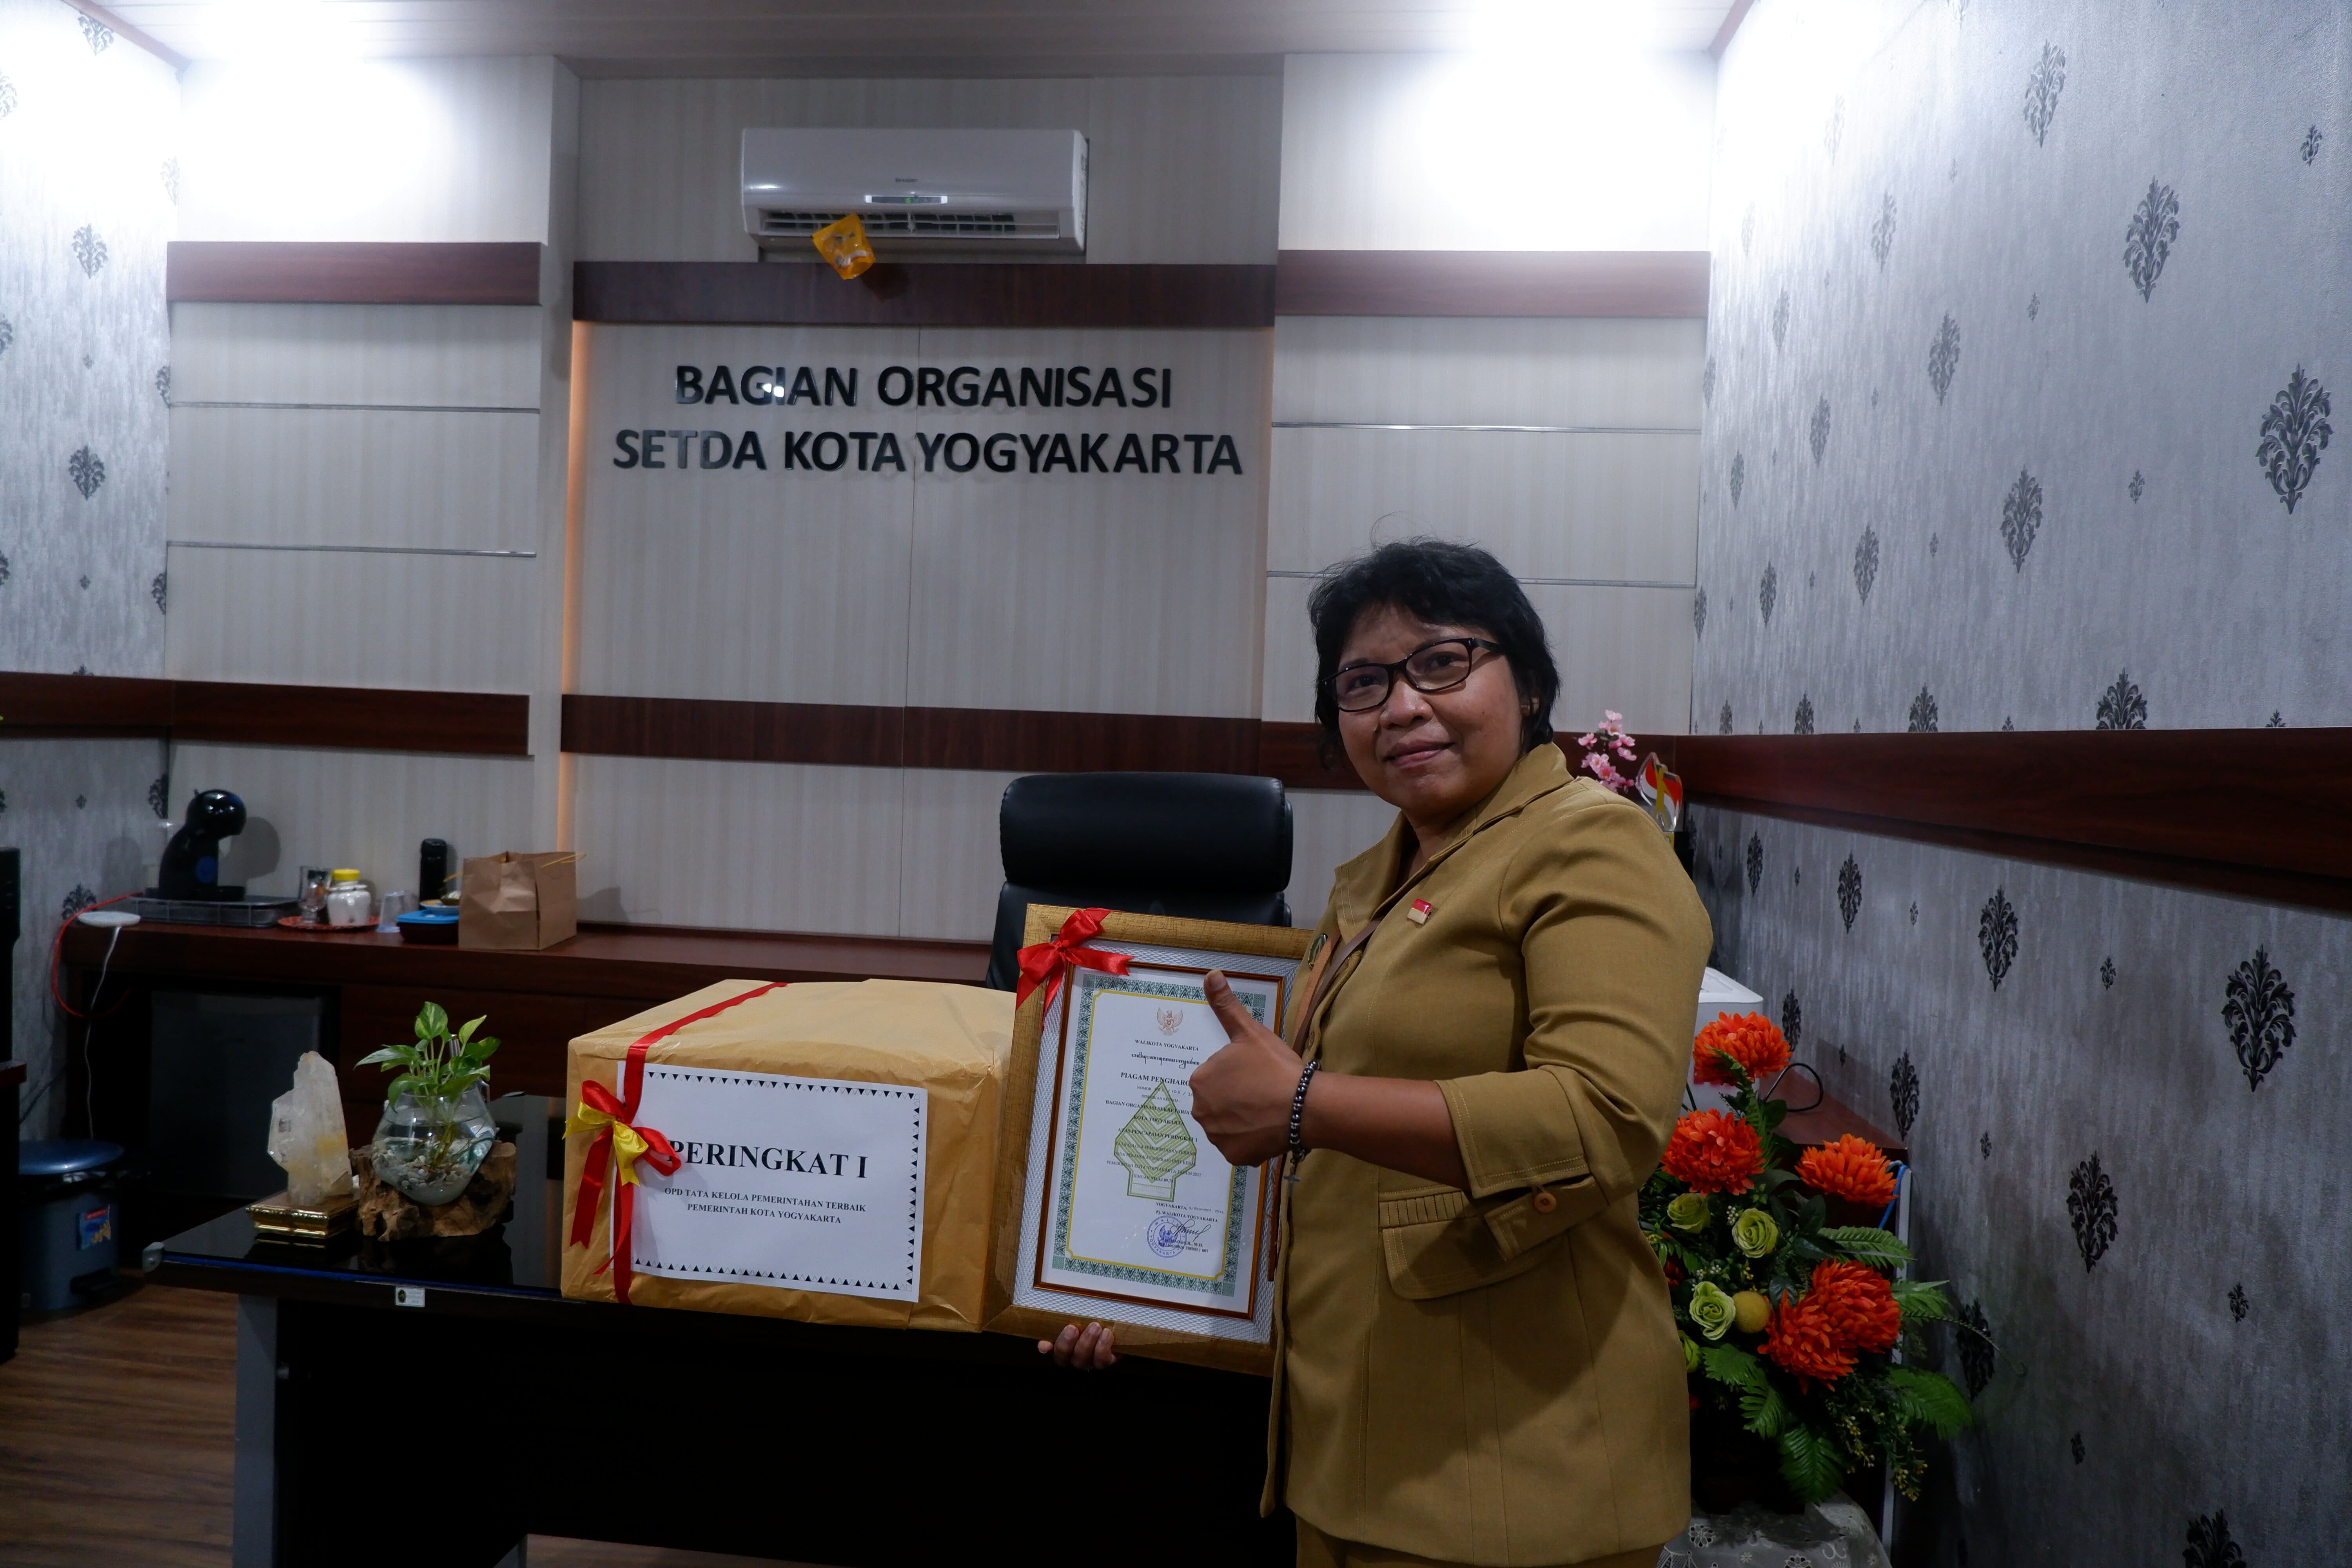 Bagian Organisasi Setda Kota Yogyakarta Meraih Peringkat I Tata Kelola Pemerintahan Terbaik Pada Perangkat Daerah/Unit Kerja di Pemerintah Kota Yogyakarta